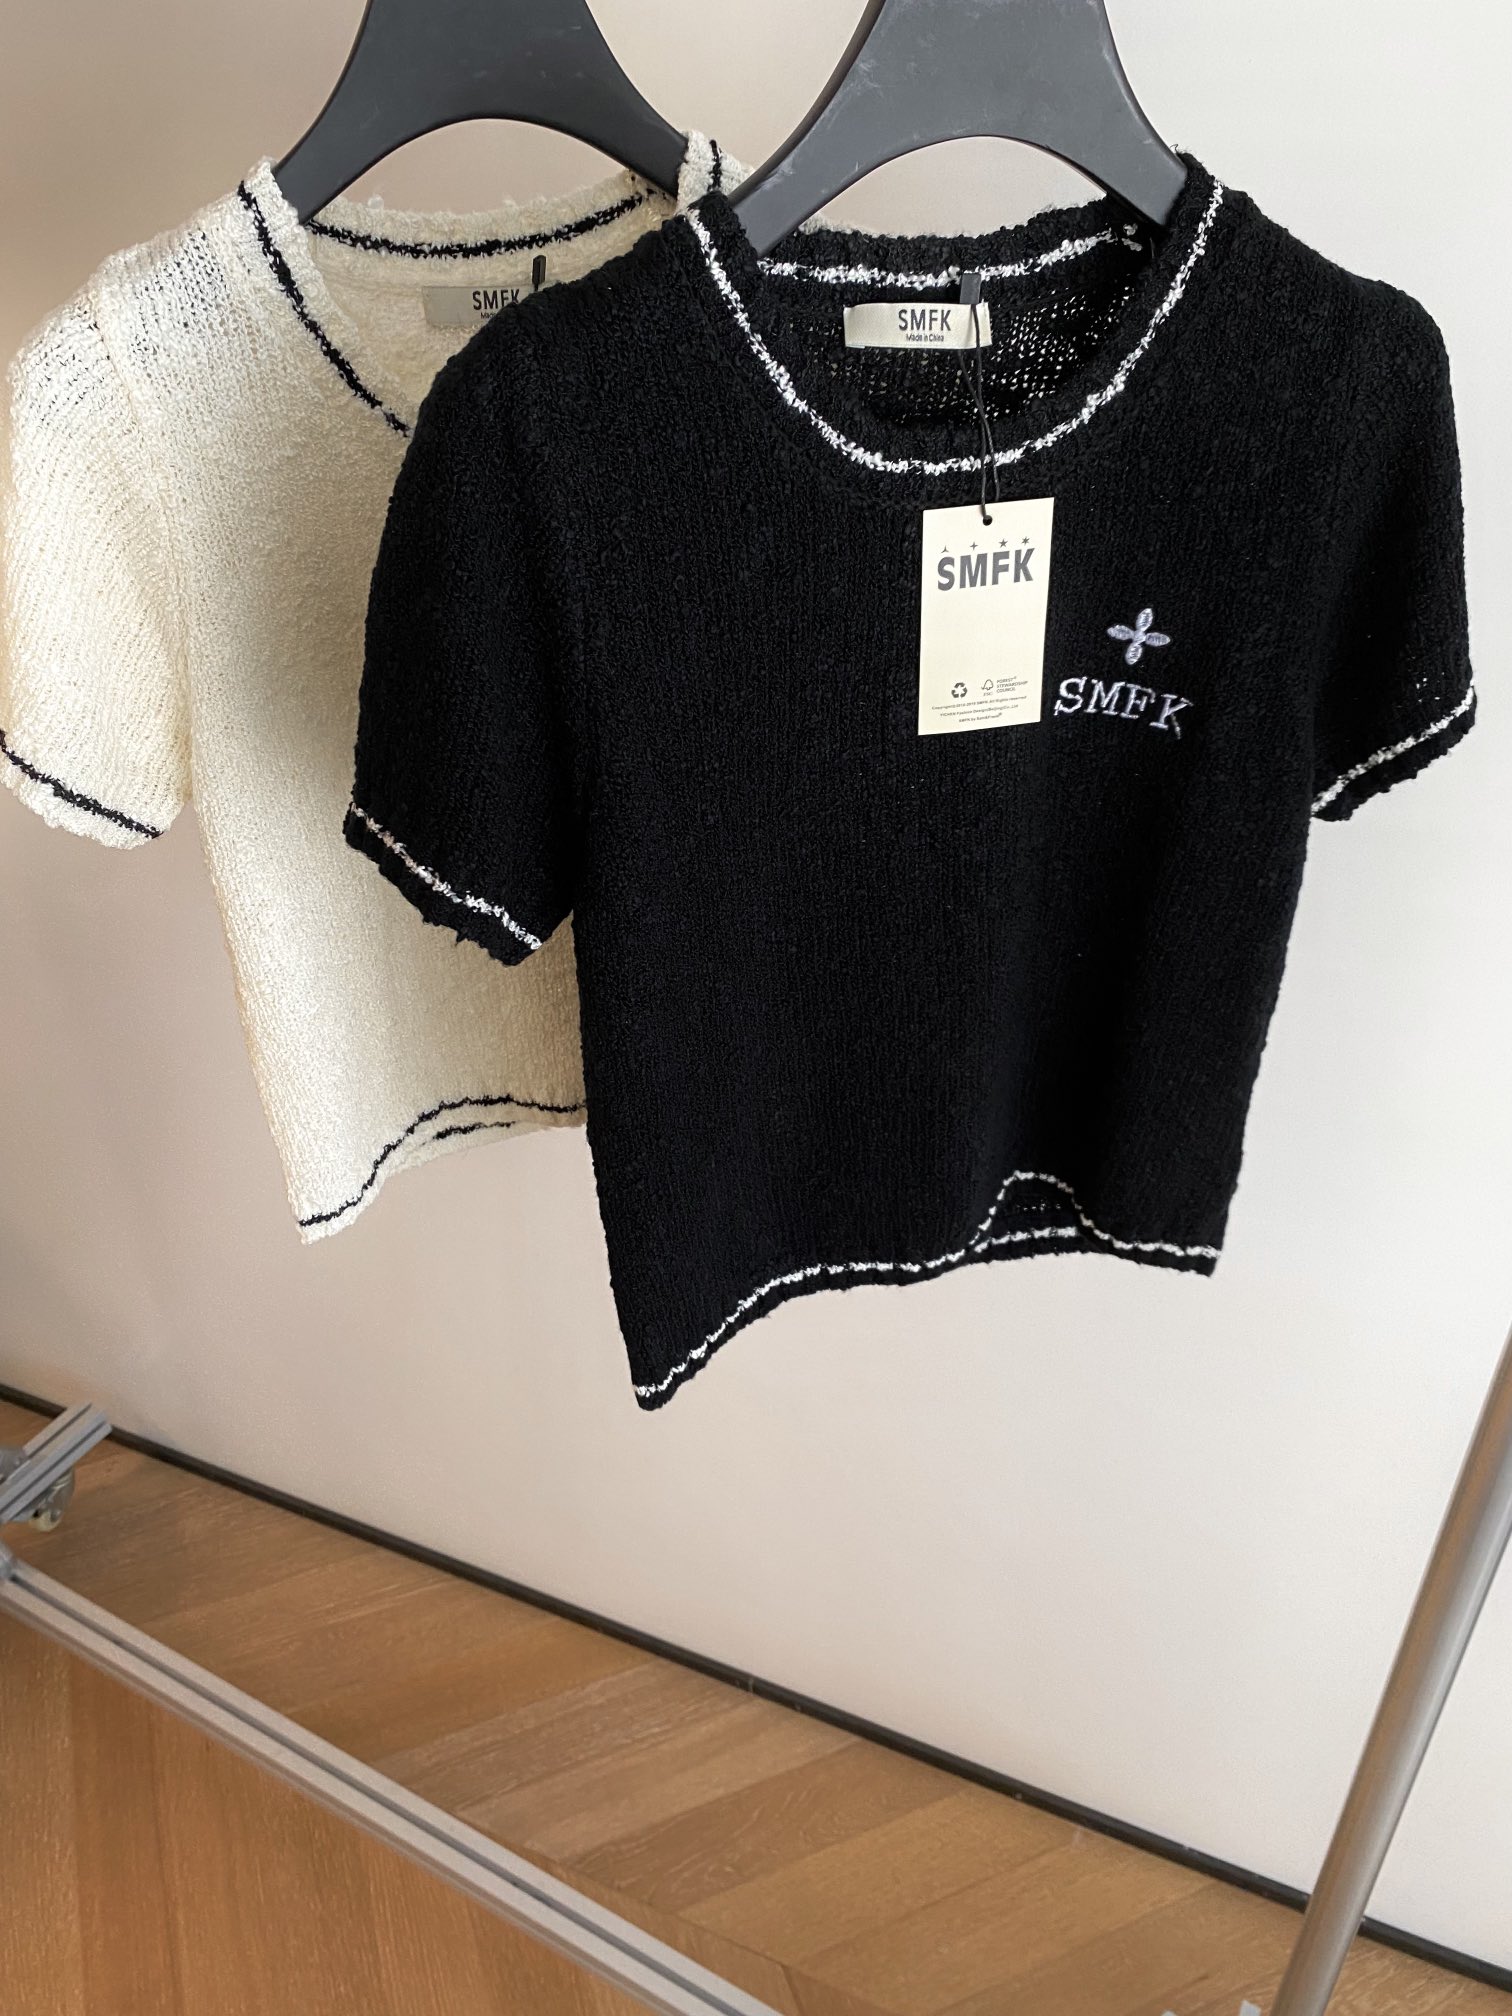 激安大特価最新作のSMFKセーター アマゾン偽物 短袖トップス ニット 刺繡 人気もの 2色可選_1